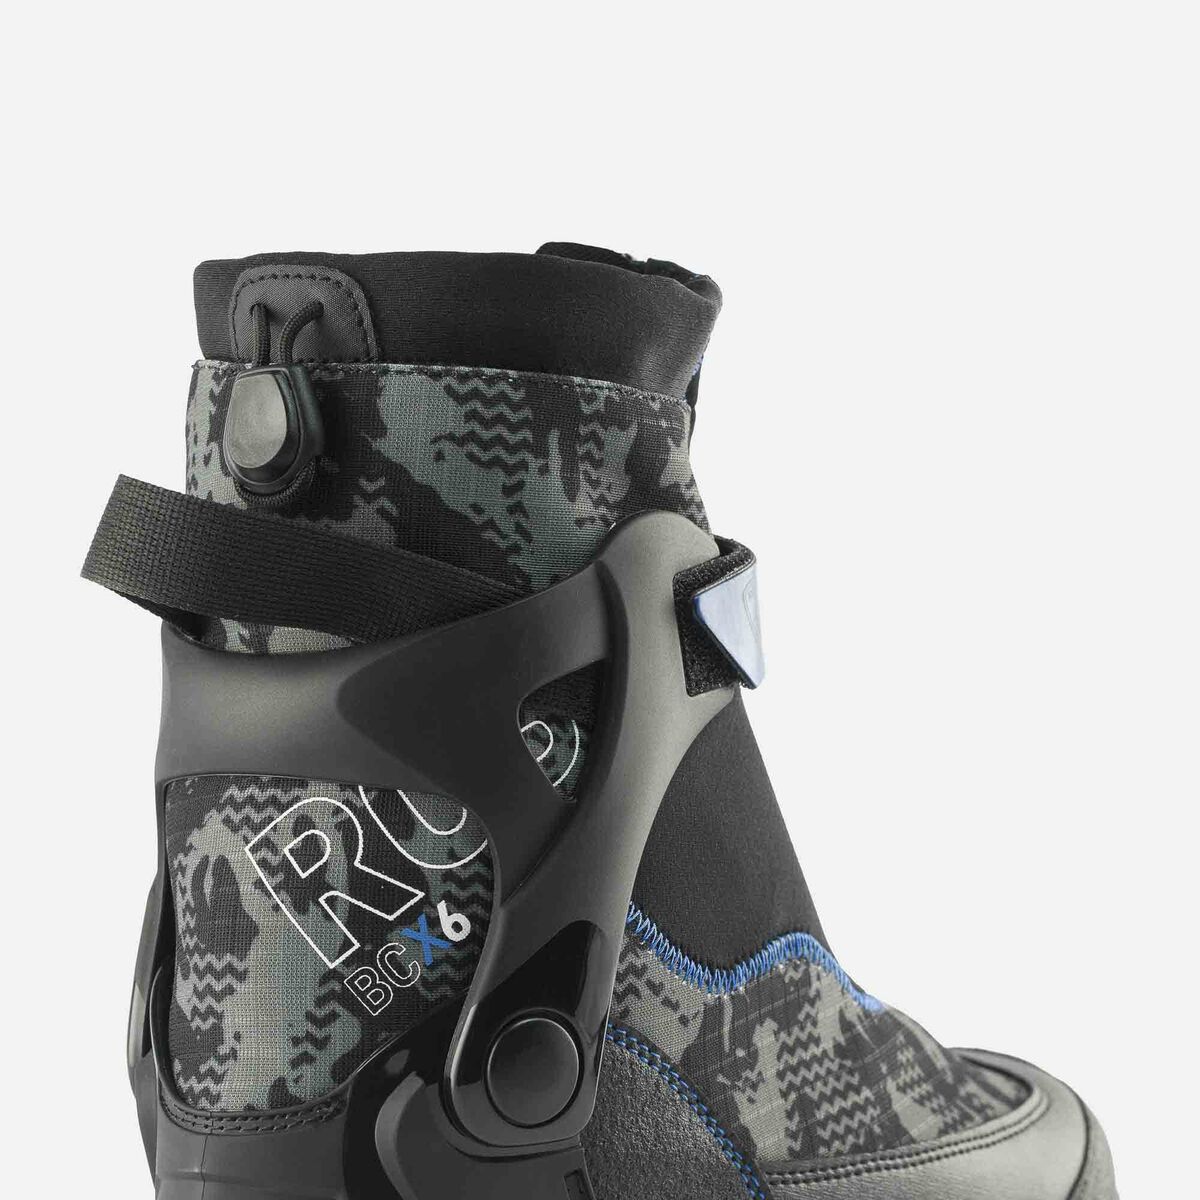 Chaussures de ski nordique Backcountry Femme Bc 6 Fw